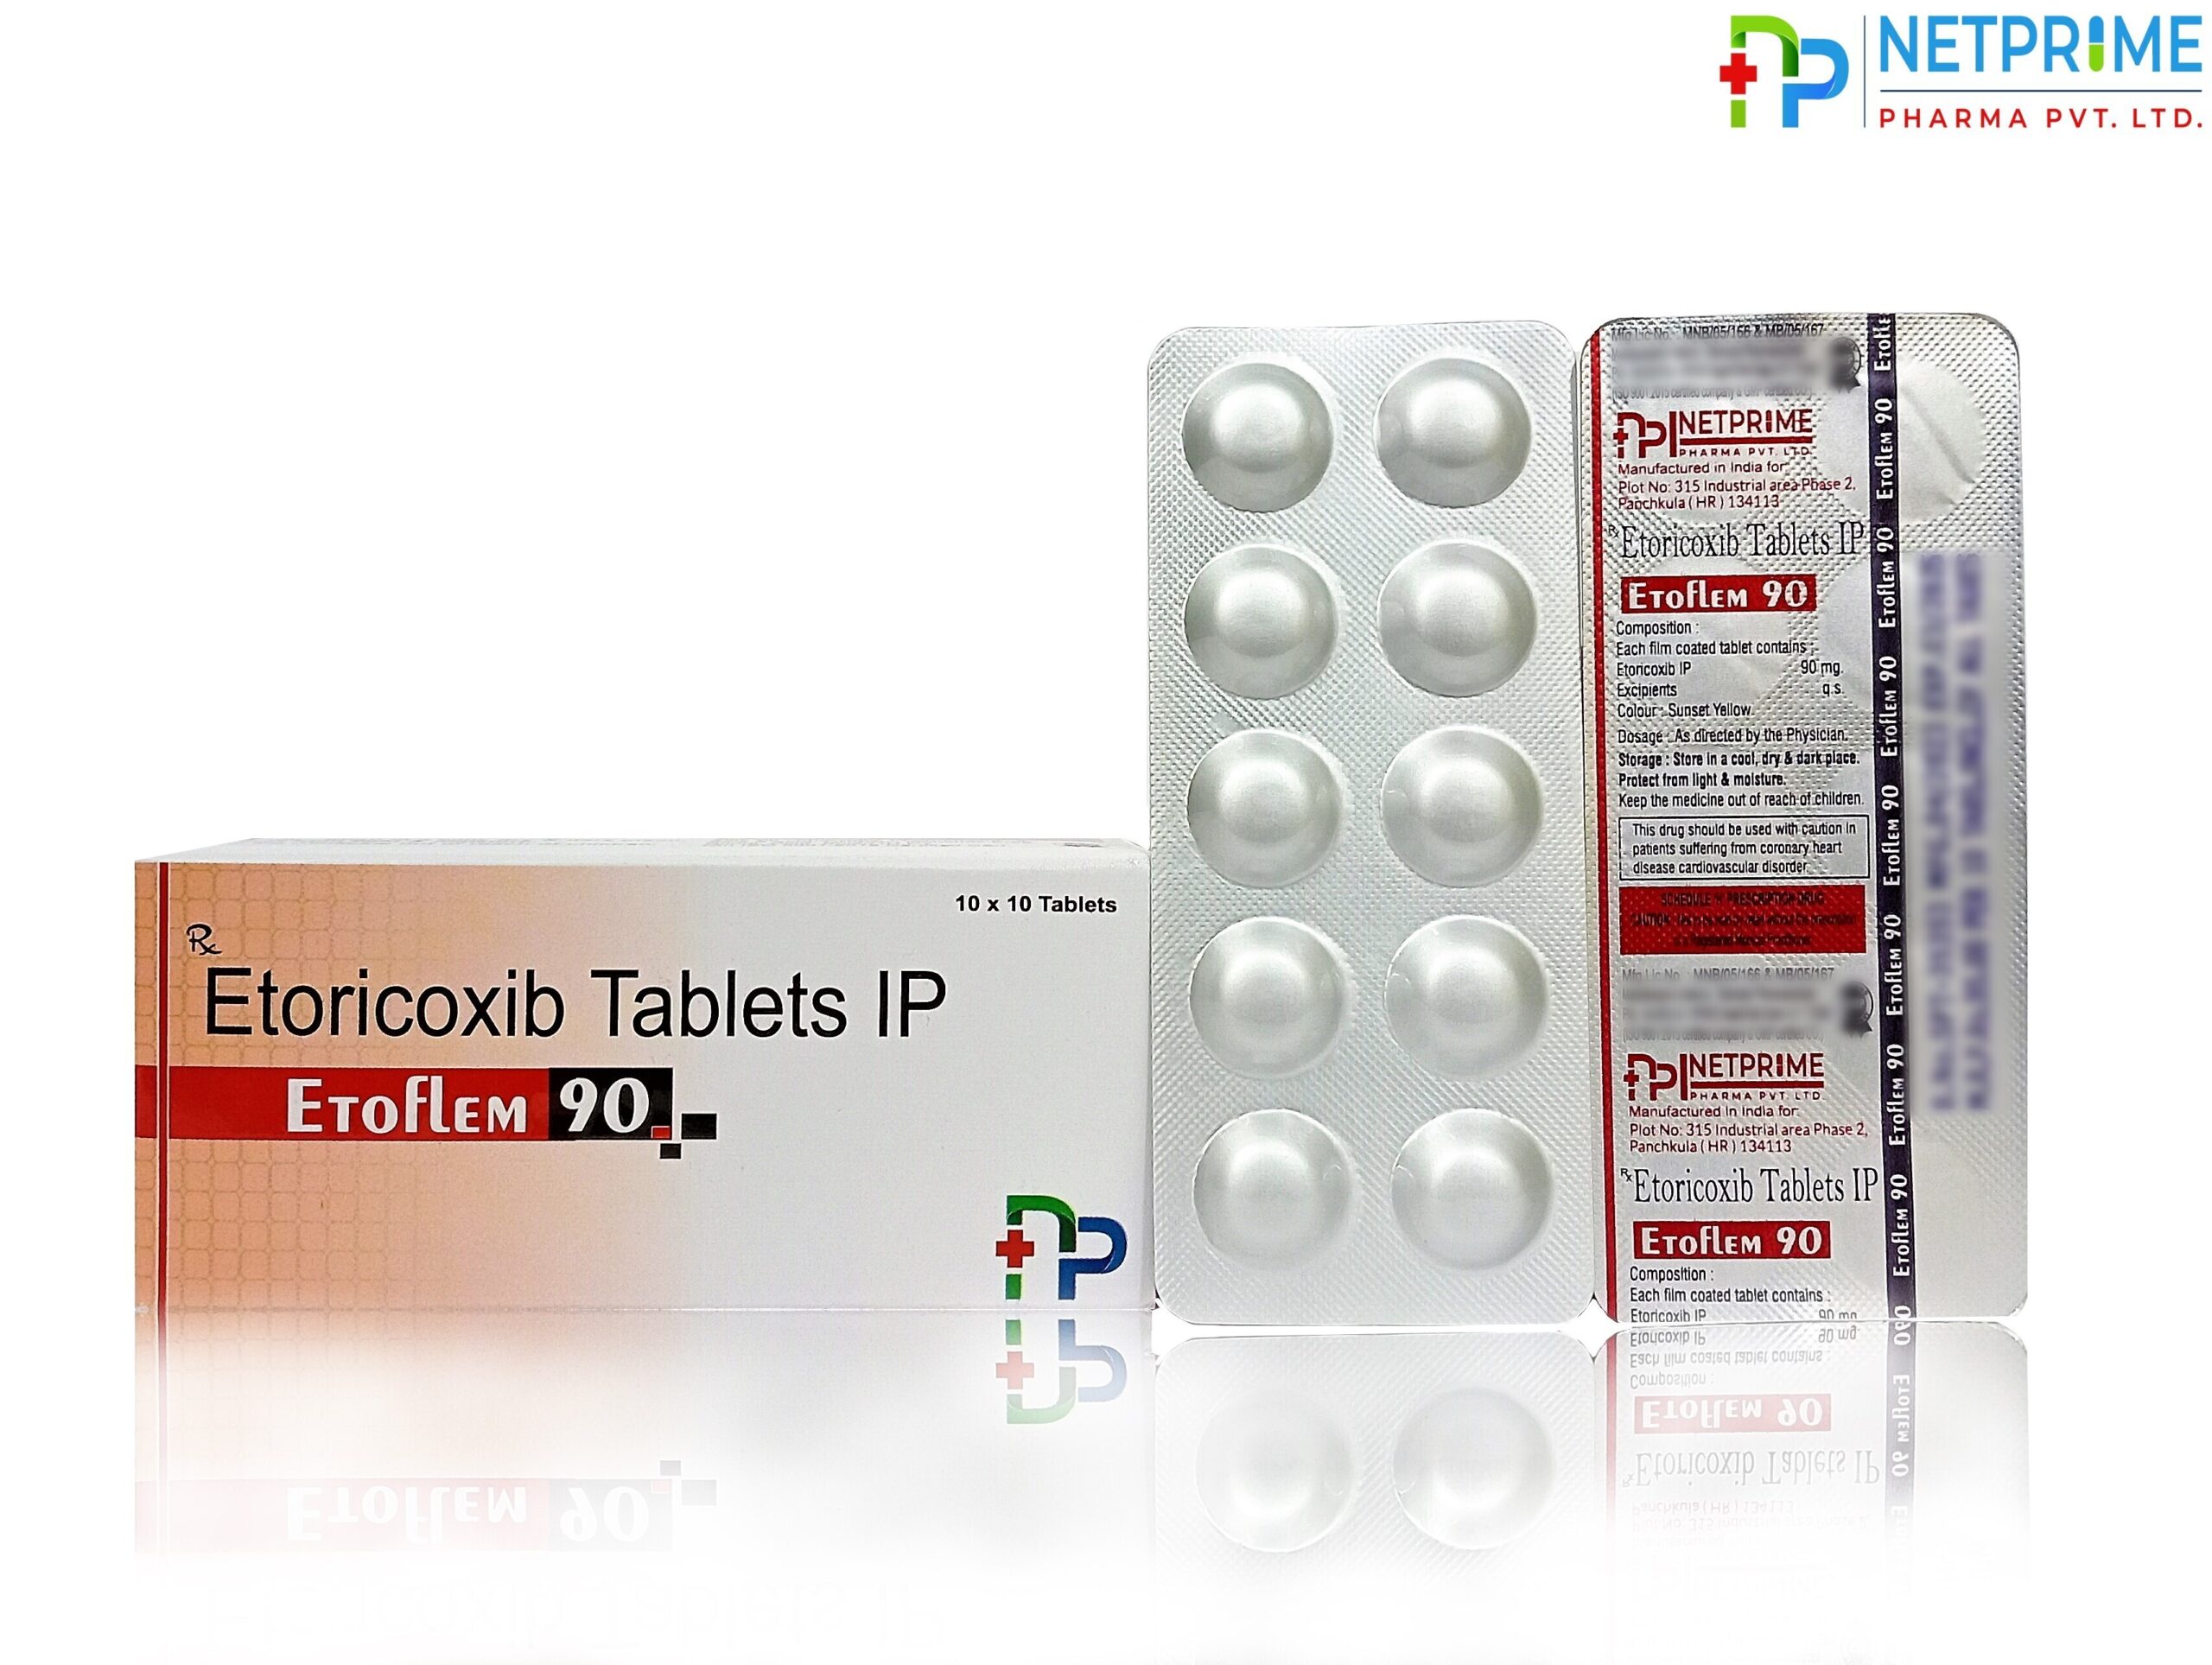 Etoricoxib I.P. 90 mg Tablets